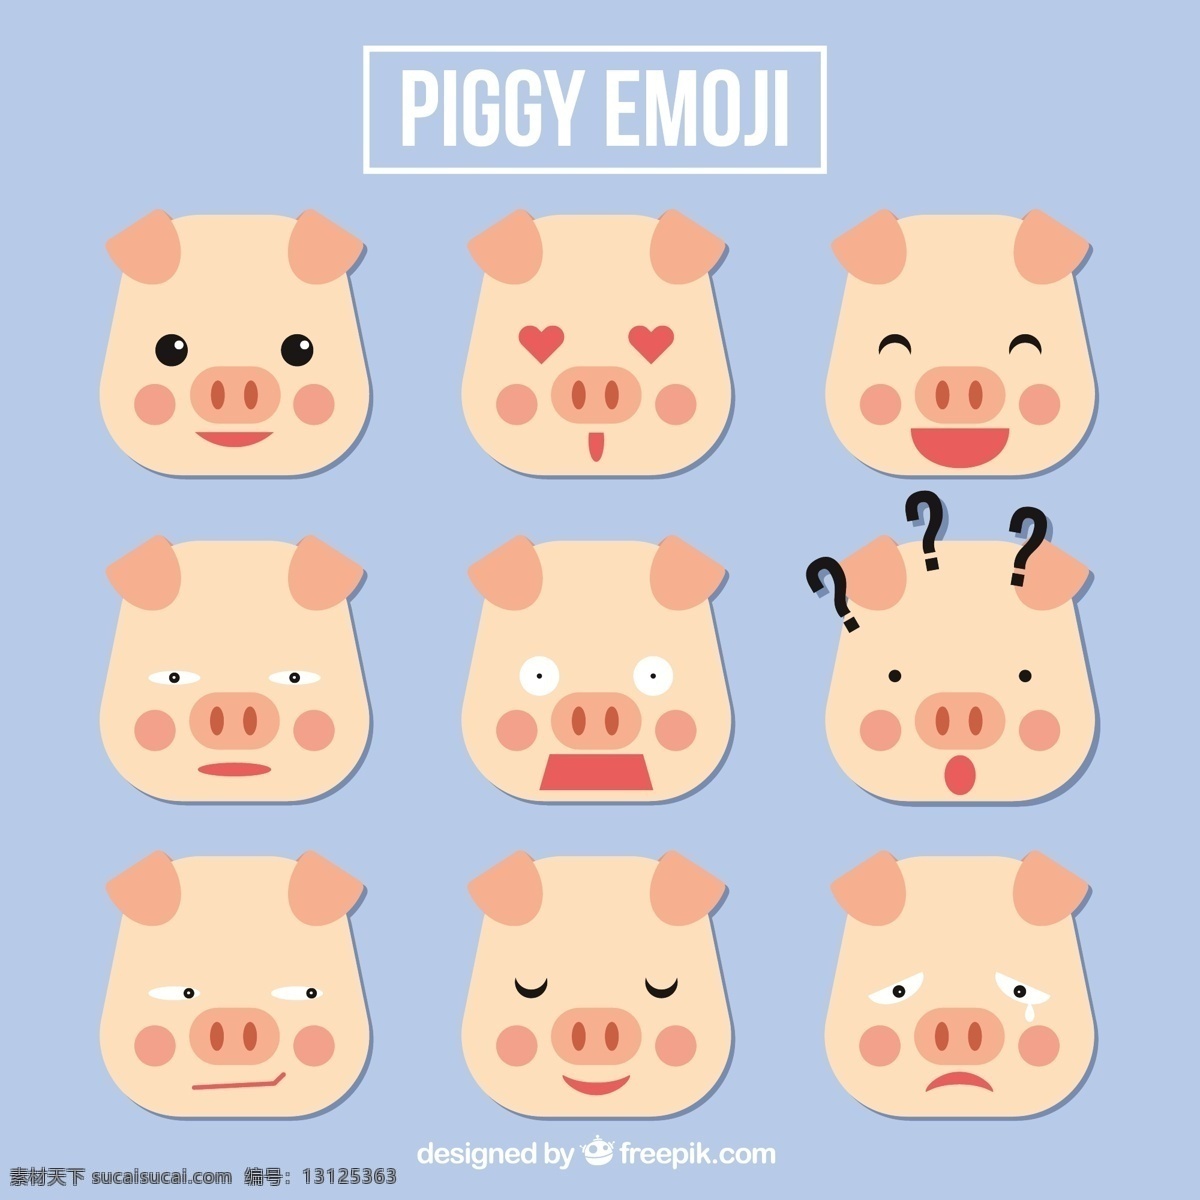 猪 表情 符号 集 几何 风格 爱设计 动物的脸 可爱的微笑 快乐 平淡 笑脸 平面设计 好玩 有趣 可爱的动物 情感 表达 快乐的脸